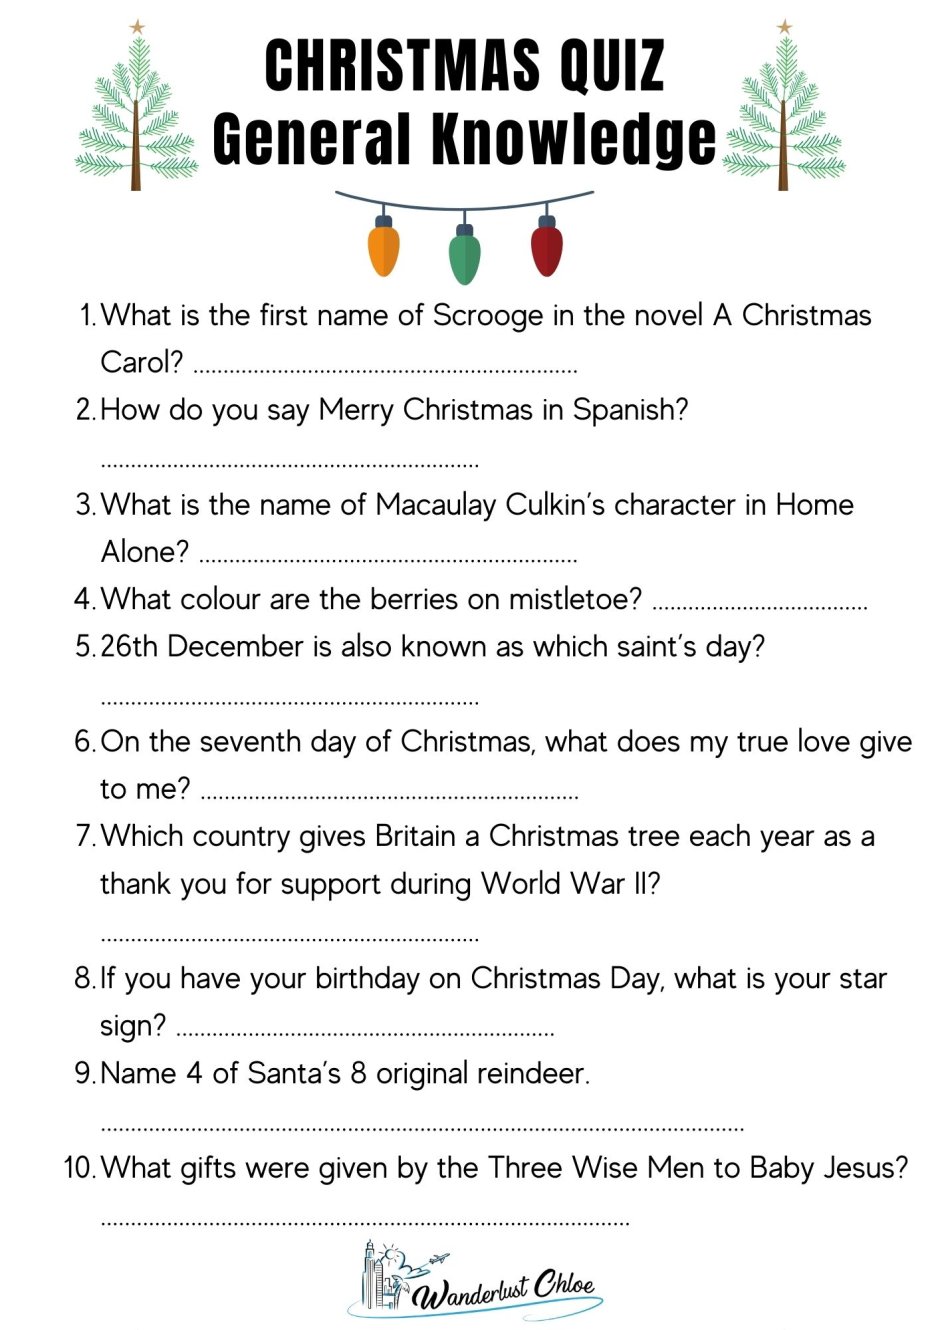 Вопросы к Christmas Quiz